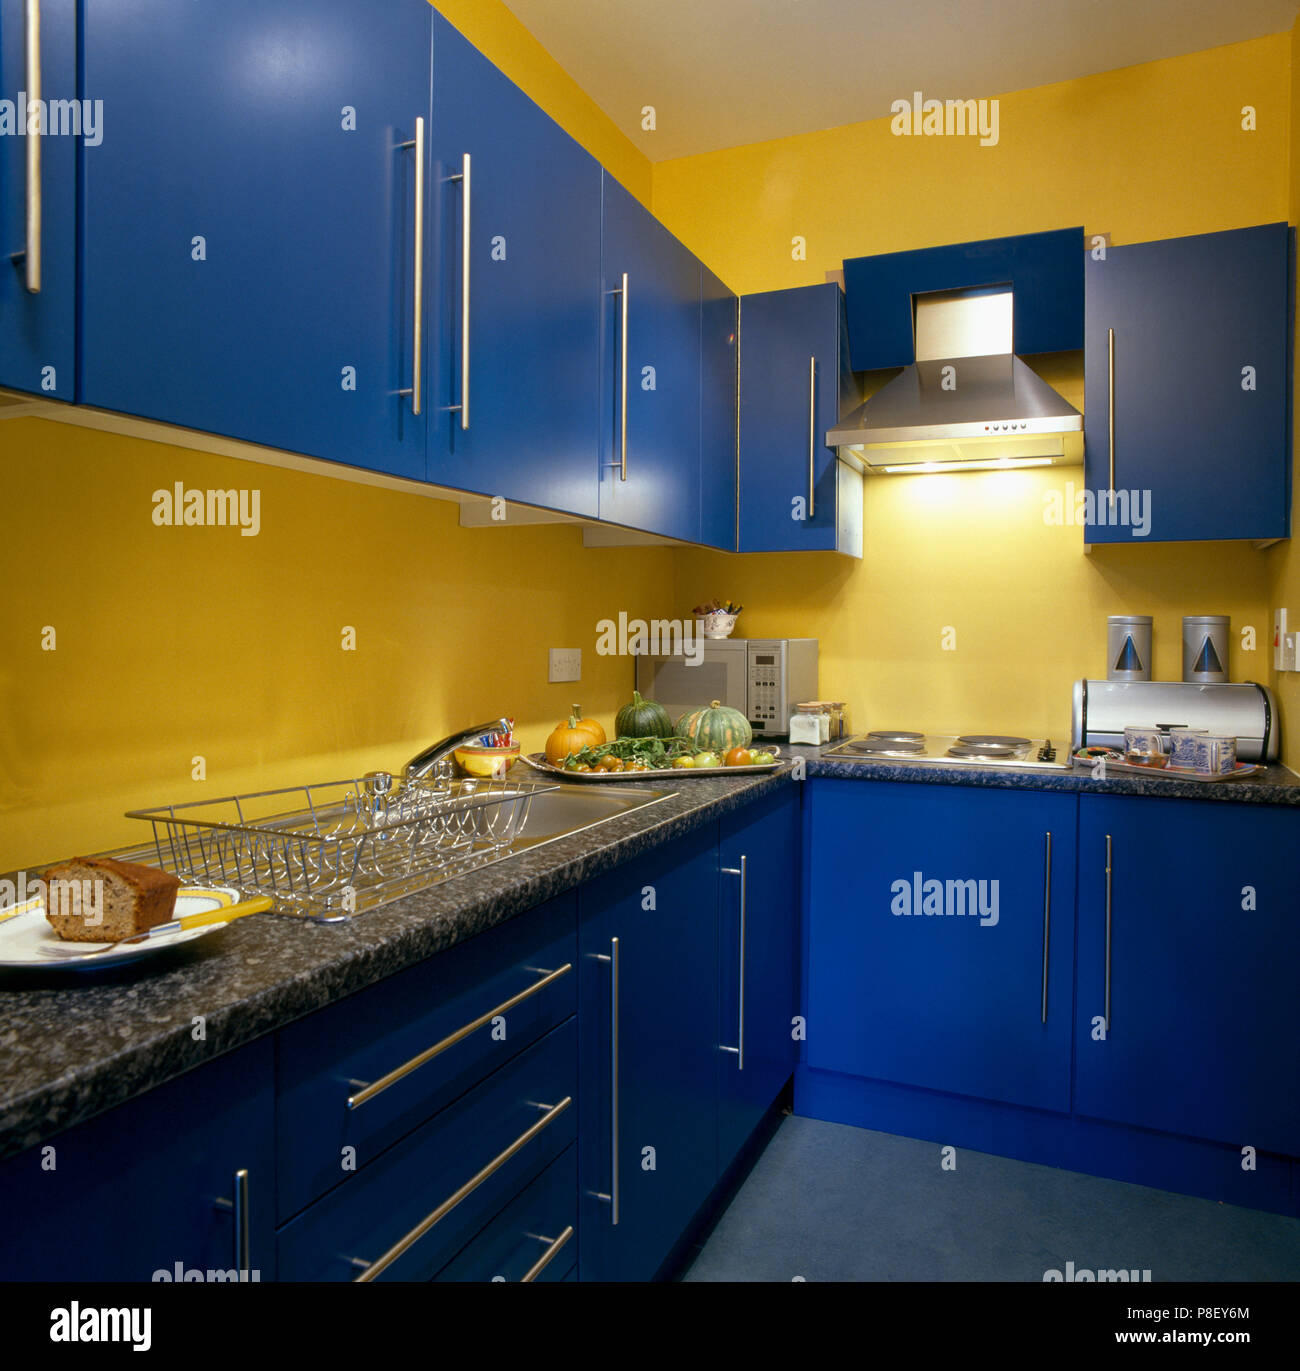 Cuisine jaune bleu lumineux avec placards et plans de travail en granit  Photo Stock - Alamy